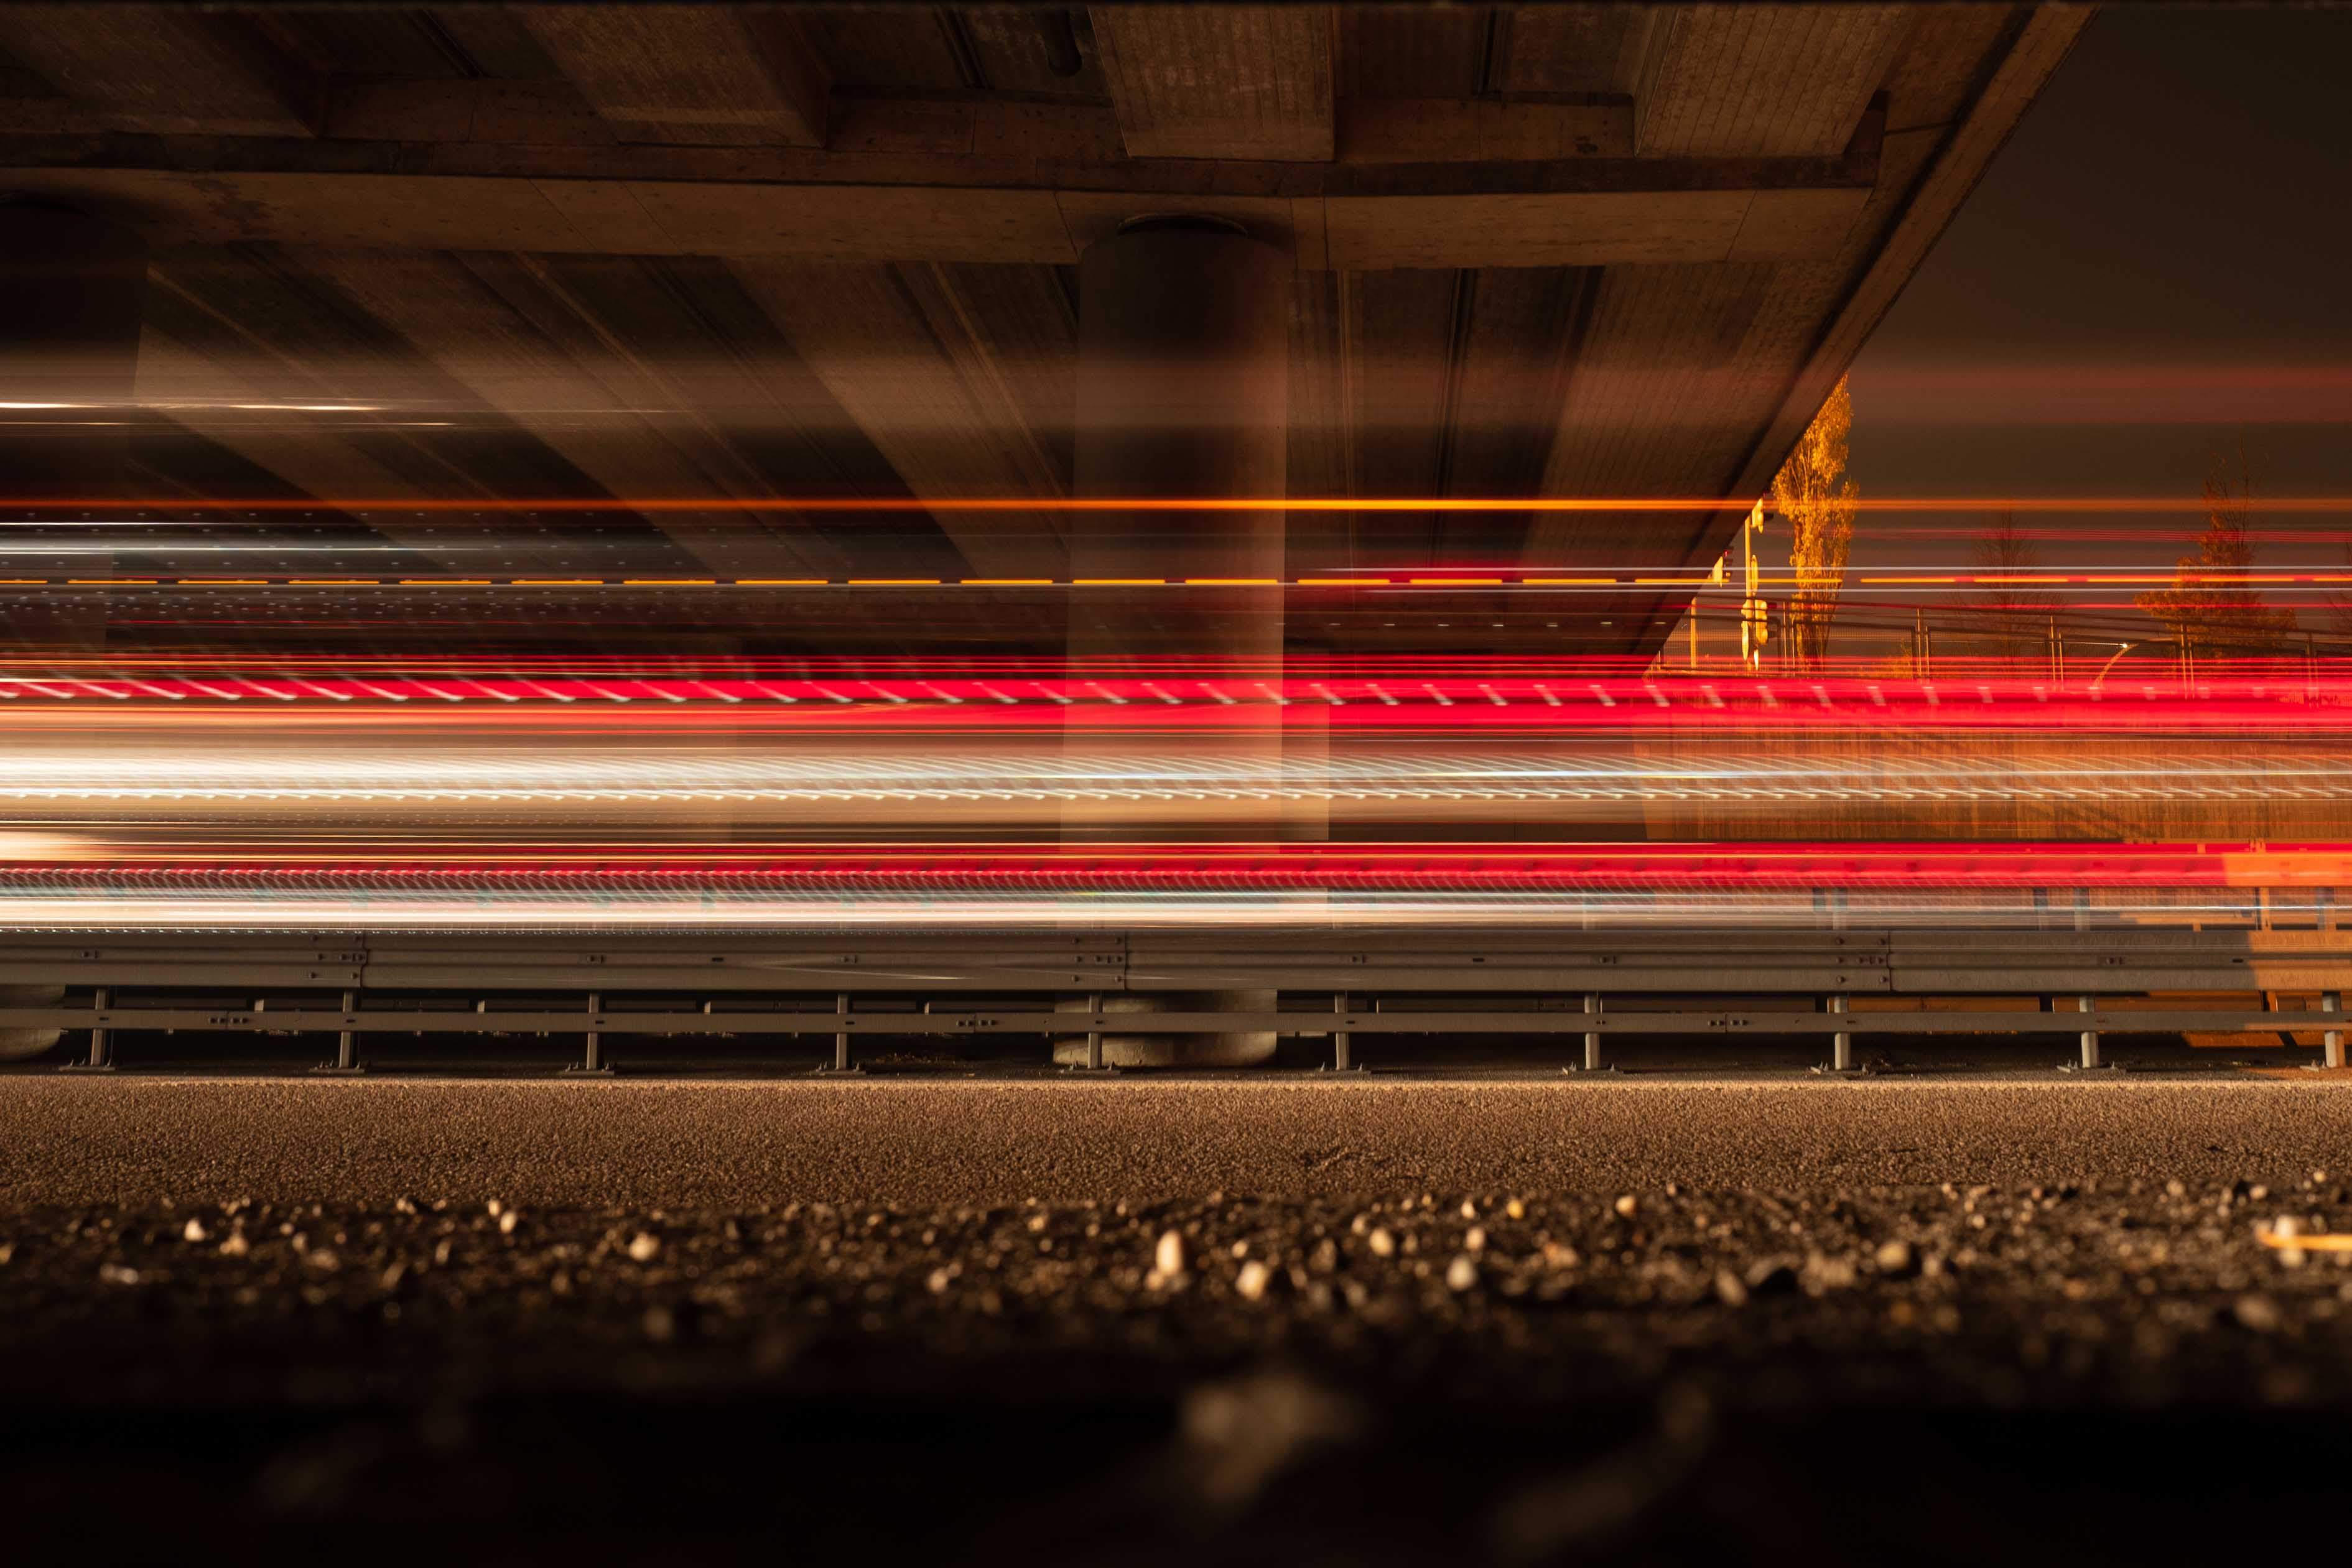 Das Bild zeigt eine Langzeitbelichtung von Fahrzeuglichtern, die unter einer Autobahnbrücke hindurchfahren. Die Lichtstreifen sind rot und weiß, was auf Rück- und Scheinwerfer der Fahrzeuge hinweist. Die Unterseite der Brücke ist sichtbar und wird von den Lichtern beleuchtet. Die Atmosphäre des Bildes ist dynamisch und dramatisch durch die Bewegung der Lichter. Fotografiert von Simon Fritz und seiner Leica Kamera bei Nacht.